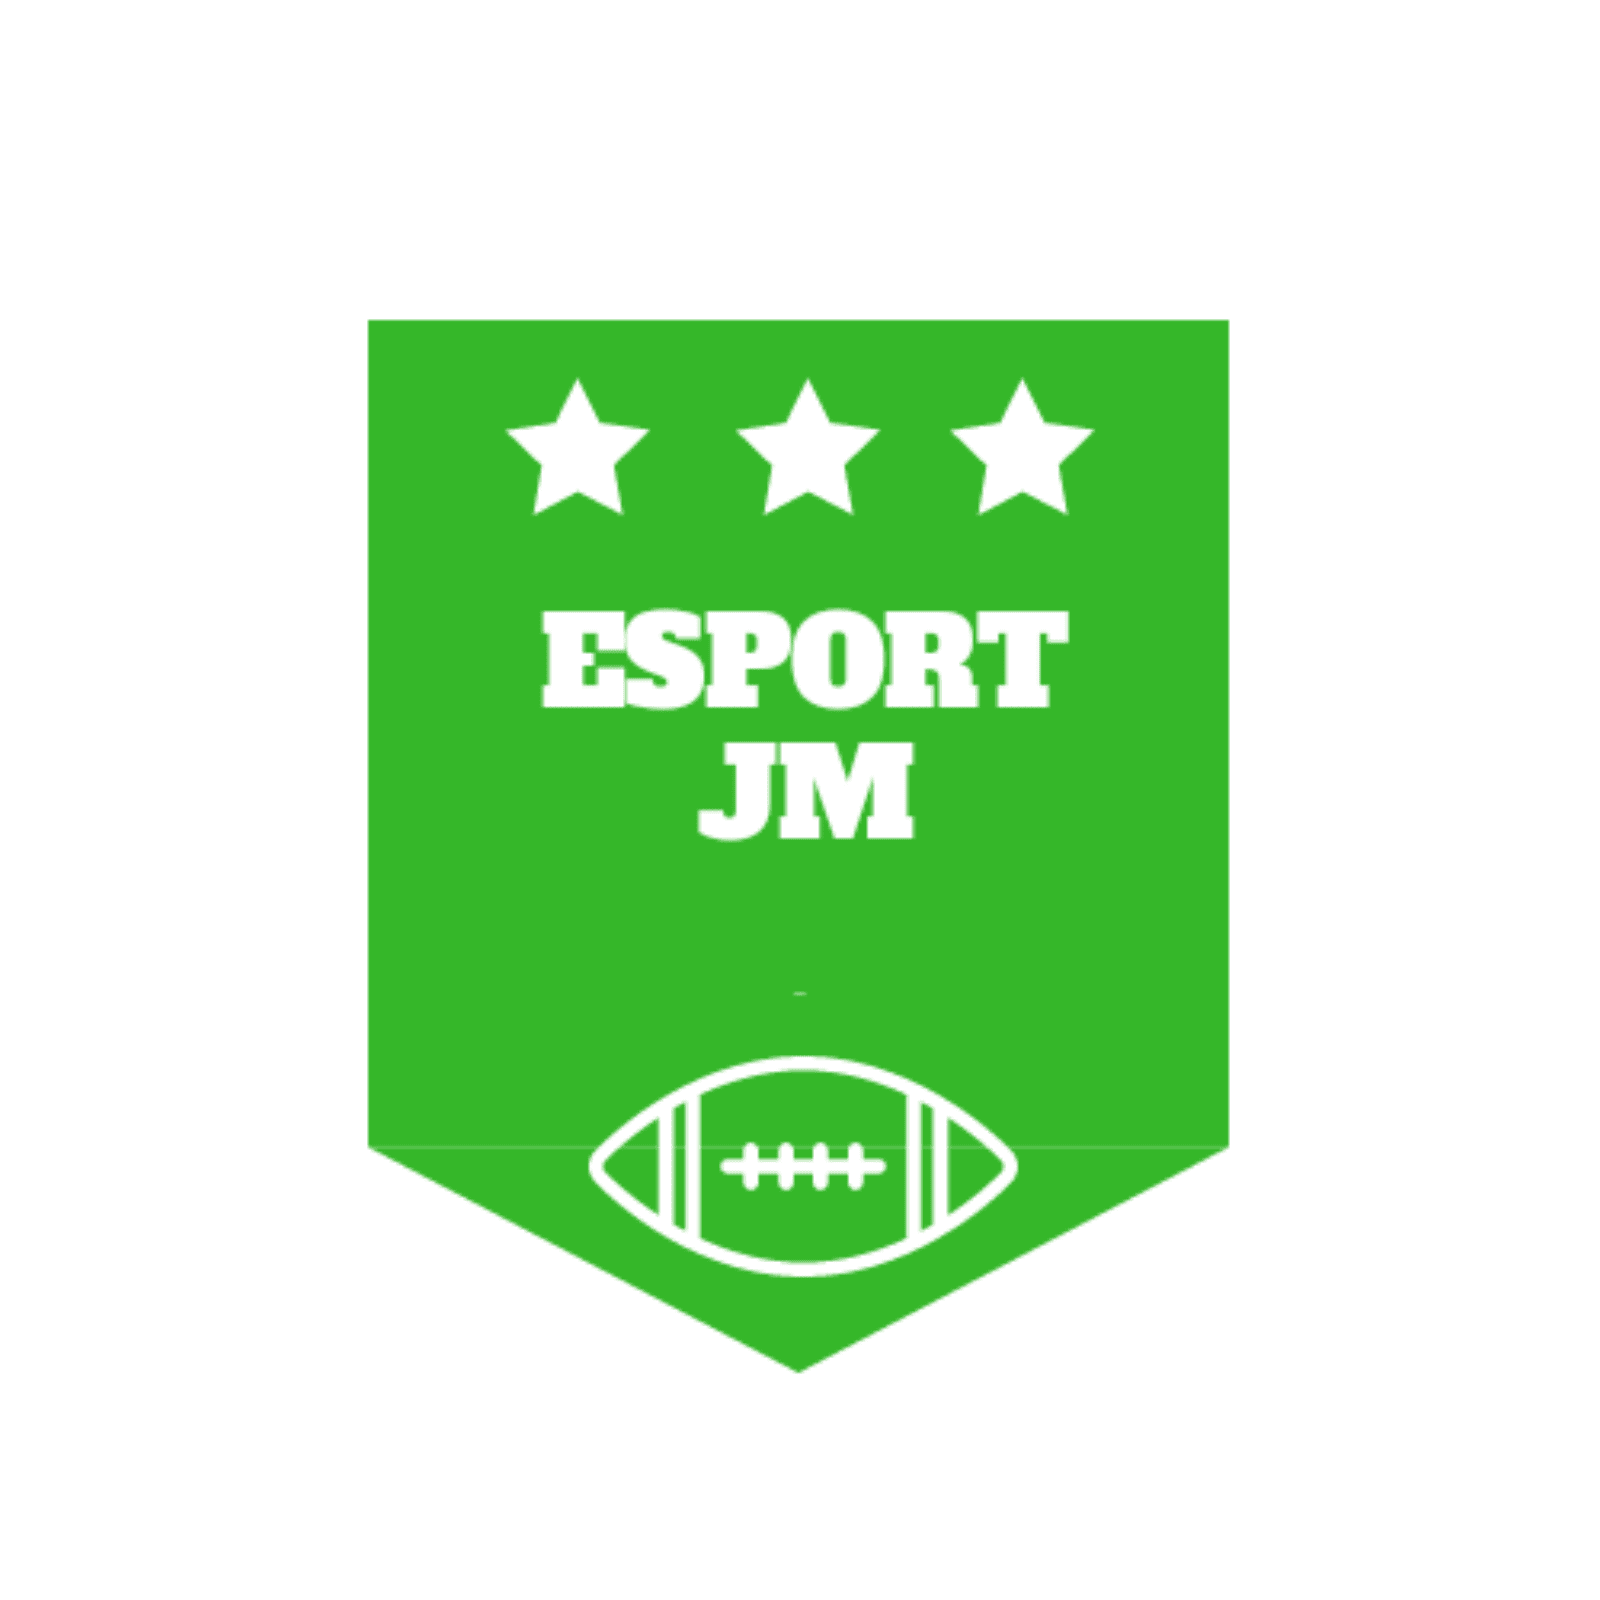 Esport JM